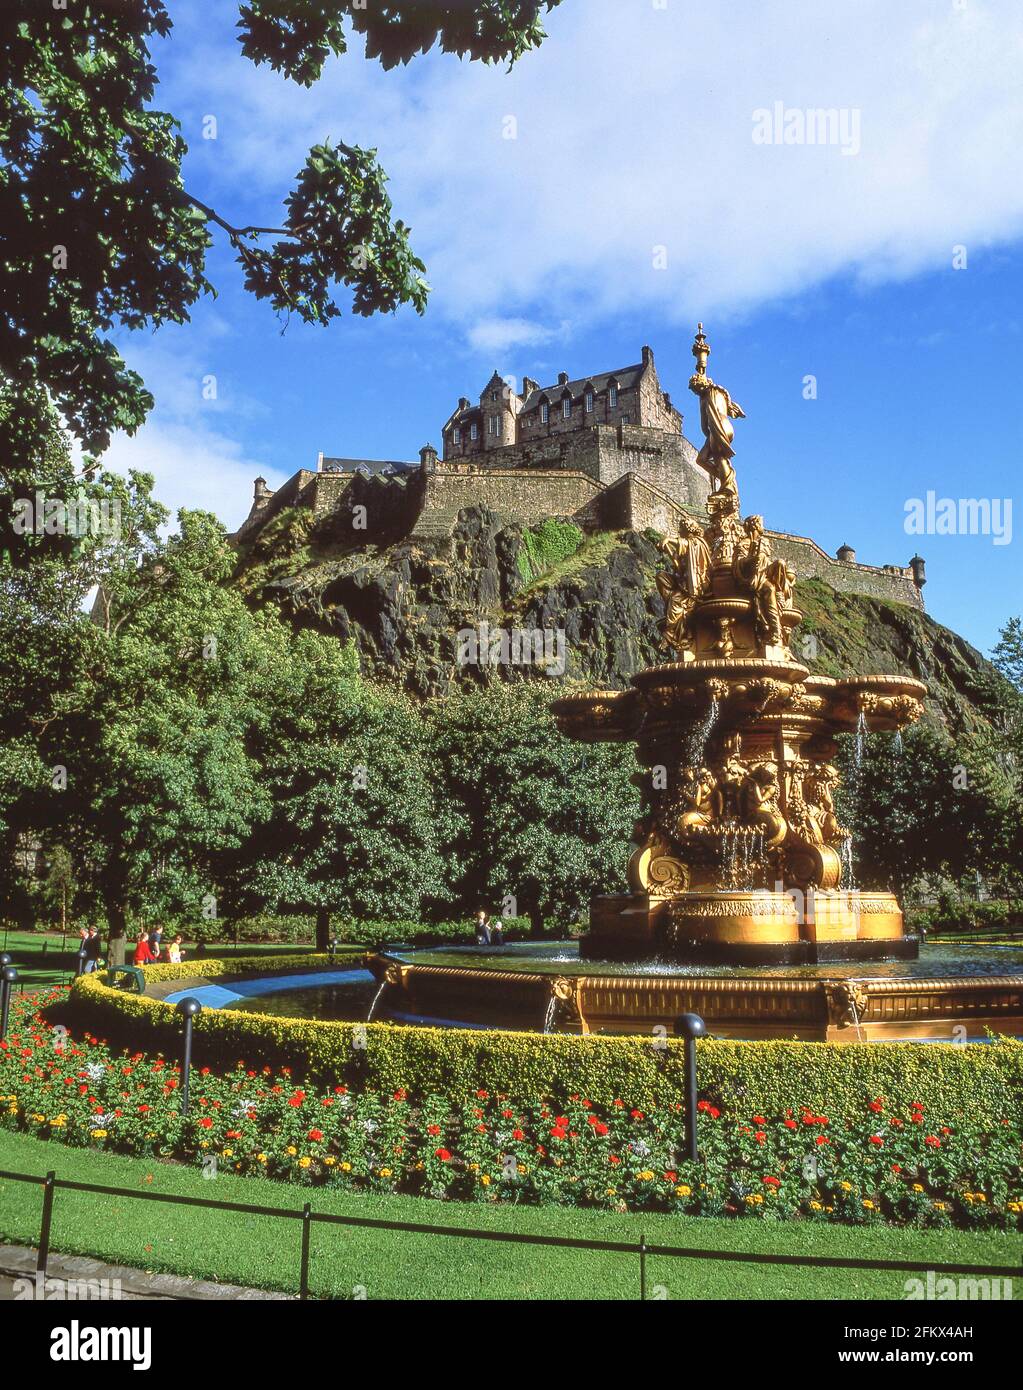 Ross Fountain und Edinburgh Castle, Princes Street Gardens, Edinburgh, Lothian, Schottland, Vereinigtes Königreich Stockfoto